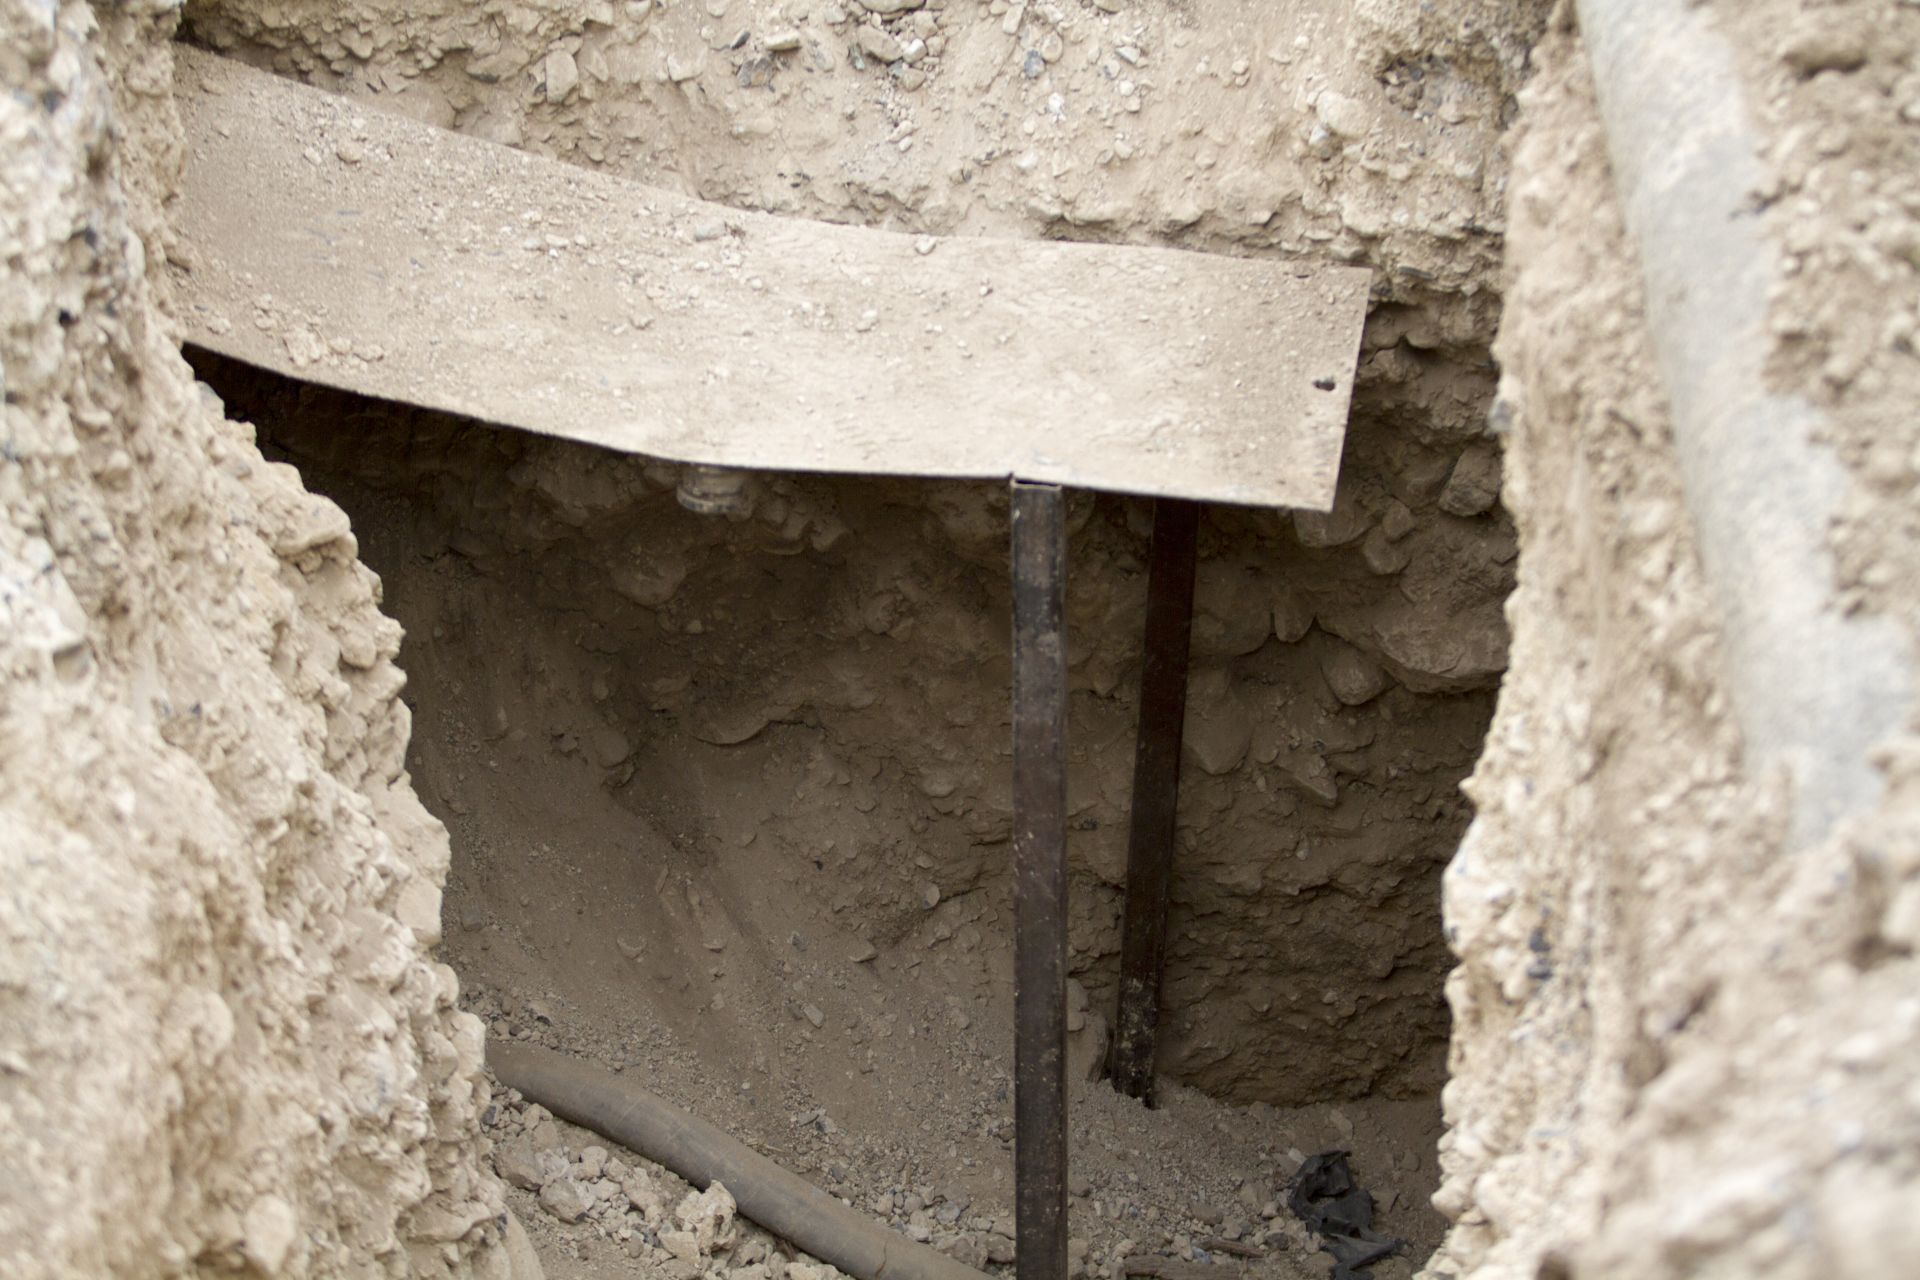 El túnel que conduce a la toma del ducto de Pemex fue encontrado en una de las locaciones, mientras que en las otras descubrieron distintas herramientas, presuntamente para perforar (Foto: Cuartoscuro)